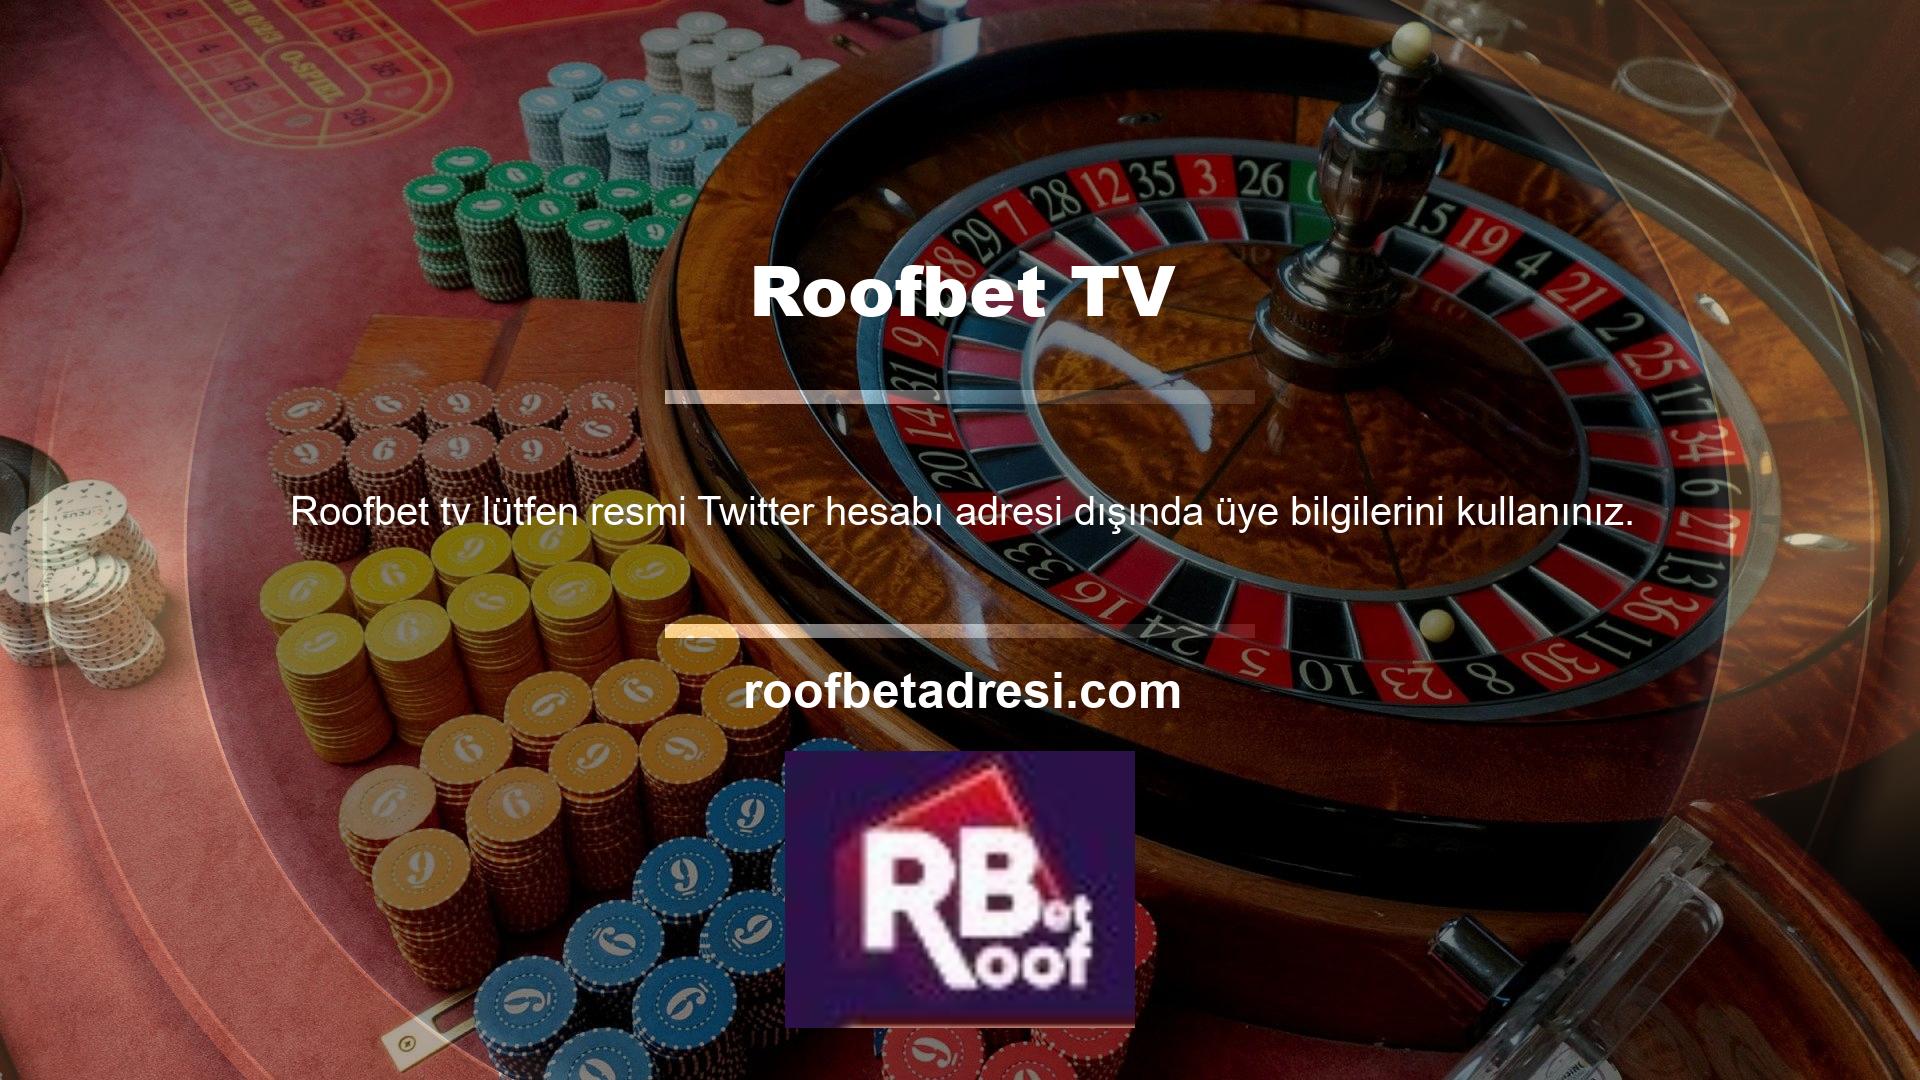 Roofbet TV'nin adımları ve iyi tanımlanmış adımları ile her zaman tercih ettiğiniz bahis bakiyesini belirleyebilir, daha verimli alanlara erişim sağlayabilir, iyi sonuçlar ve kazanç artışı sağlayabilirsiniz